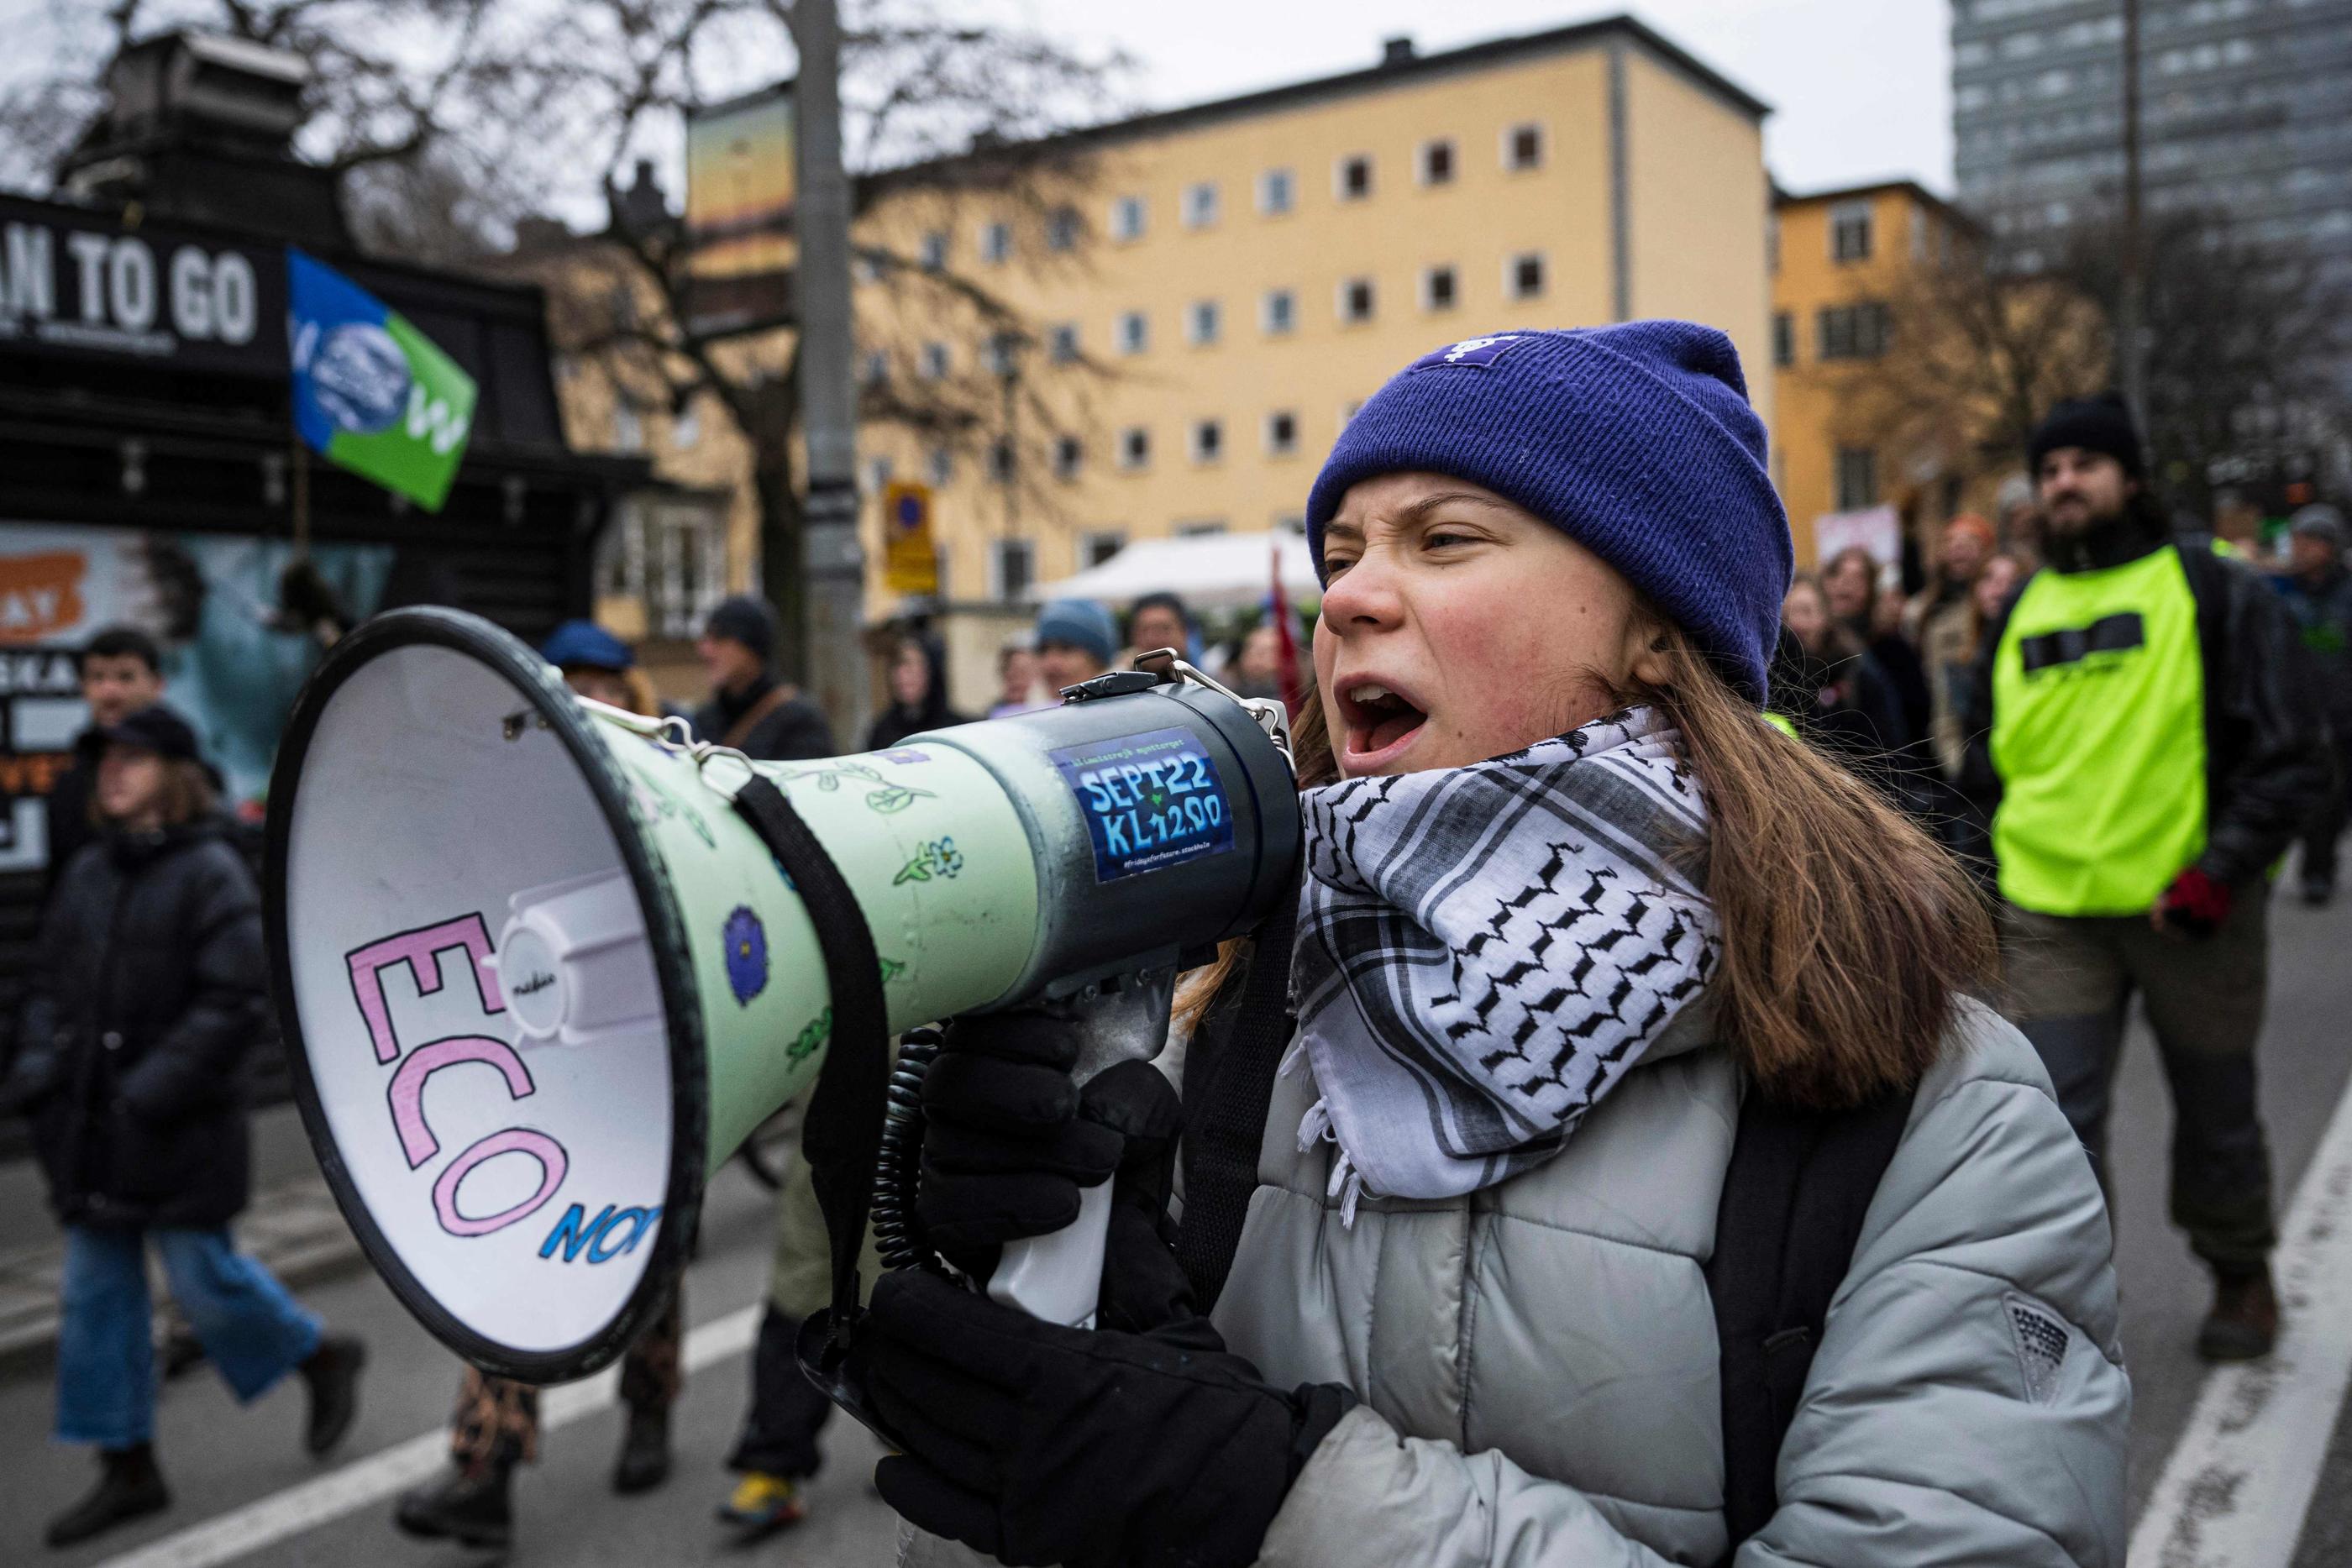 La jeune militante était présente à la marche "Fridays for Future", vendredi dernier à Stockholm. AFP/Jonathan Nackstrand